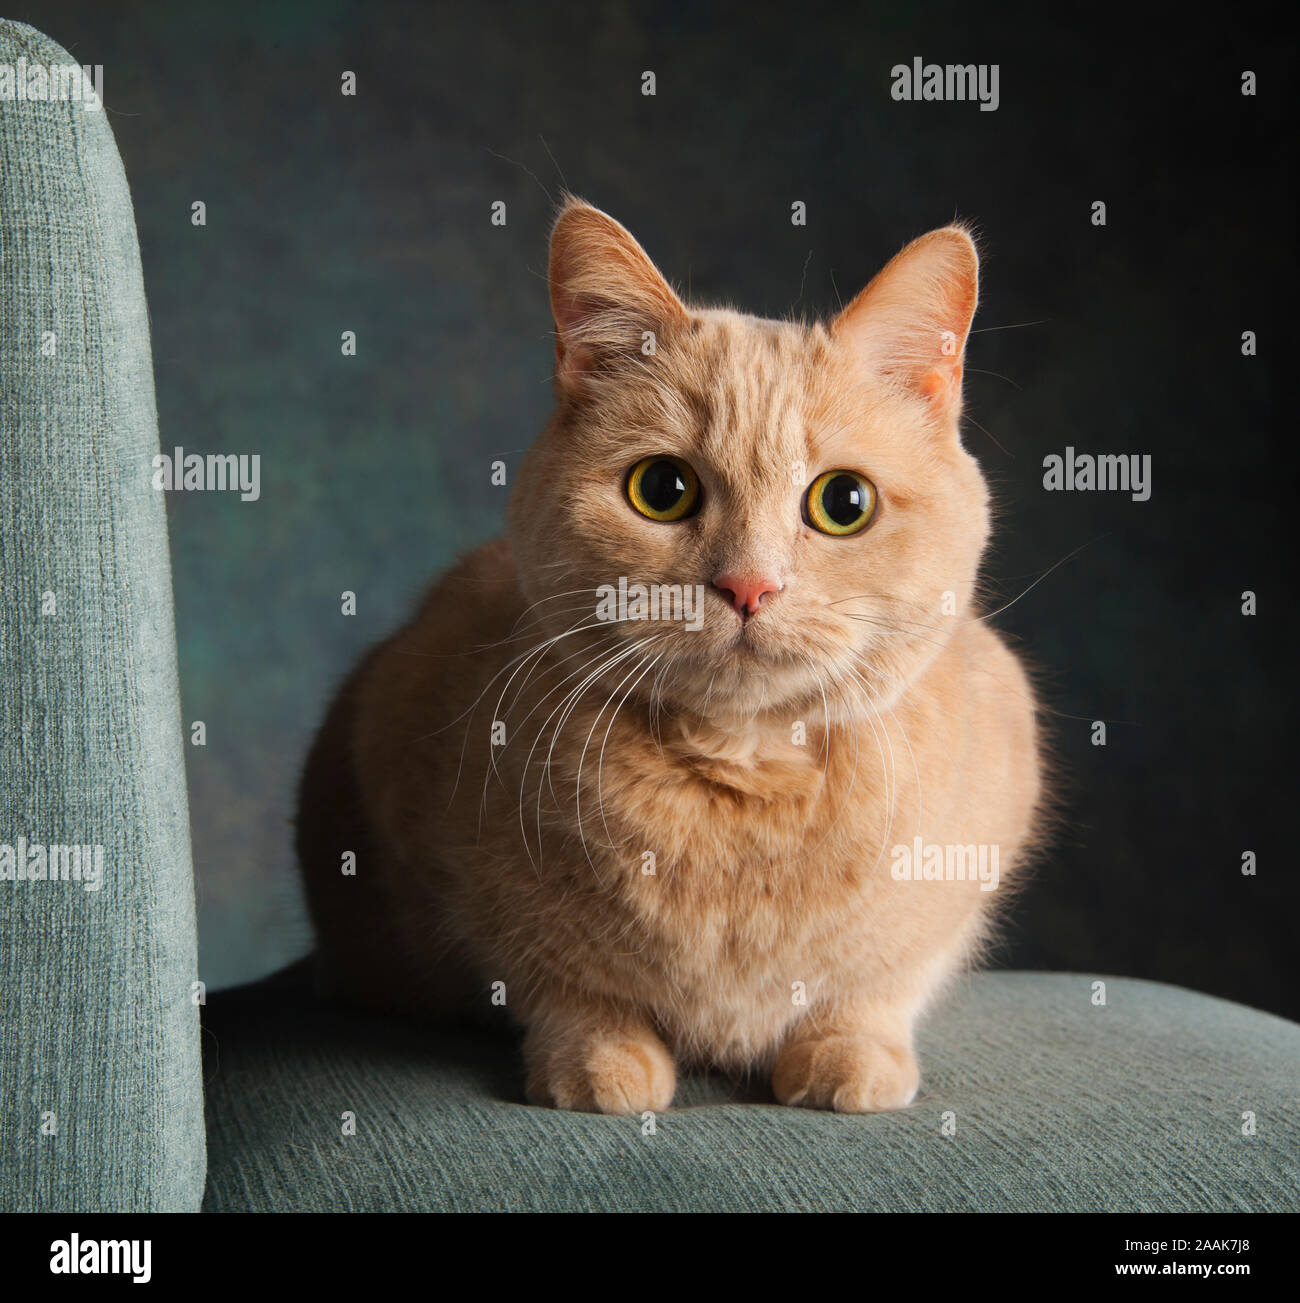 Retrato de estudio de gato atigrado Foto de stock